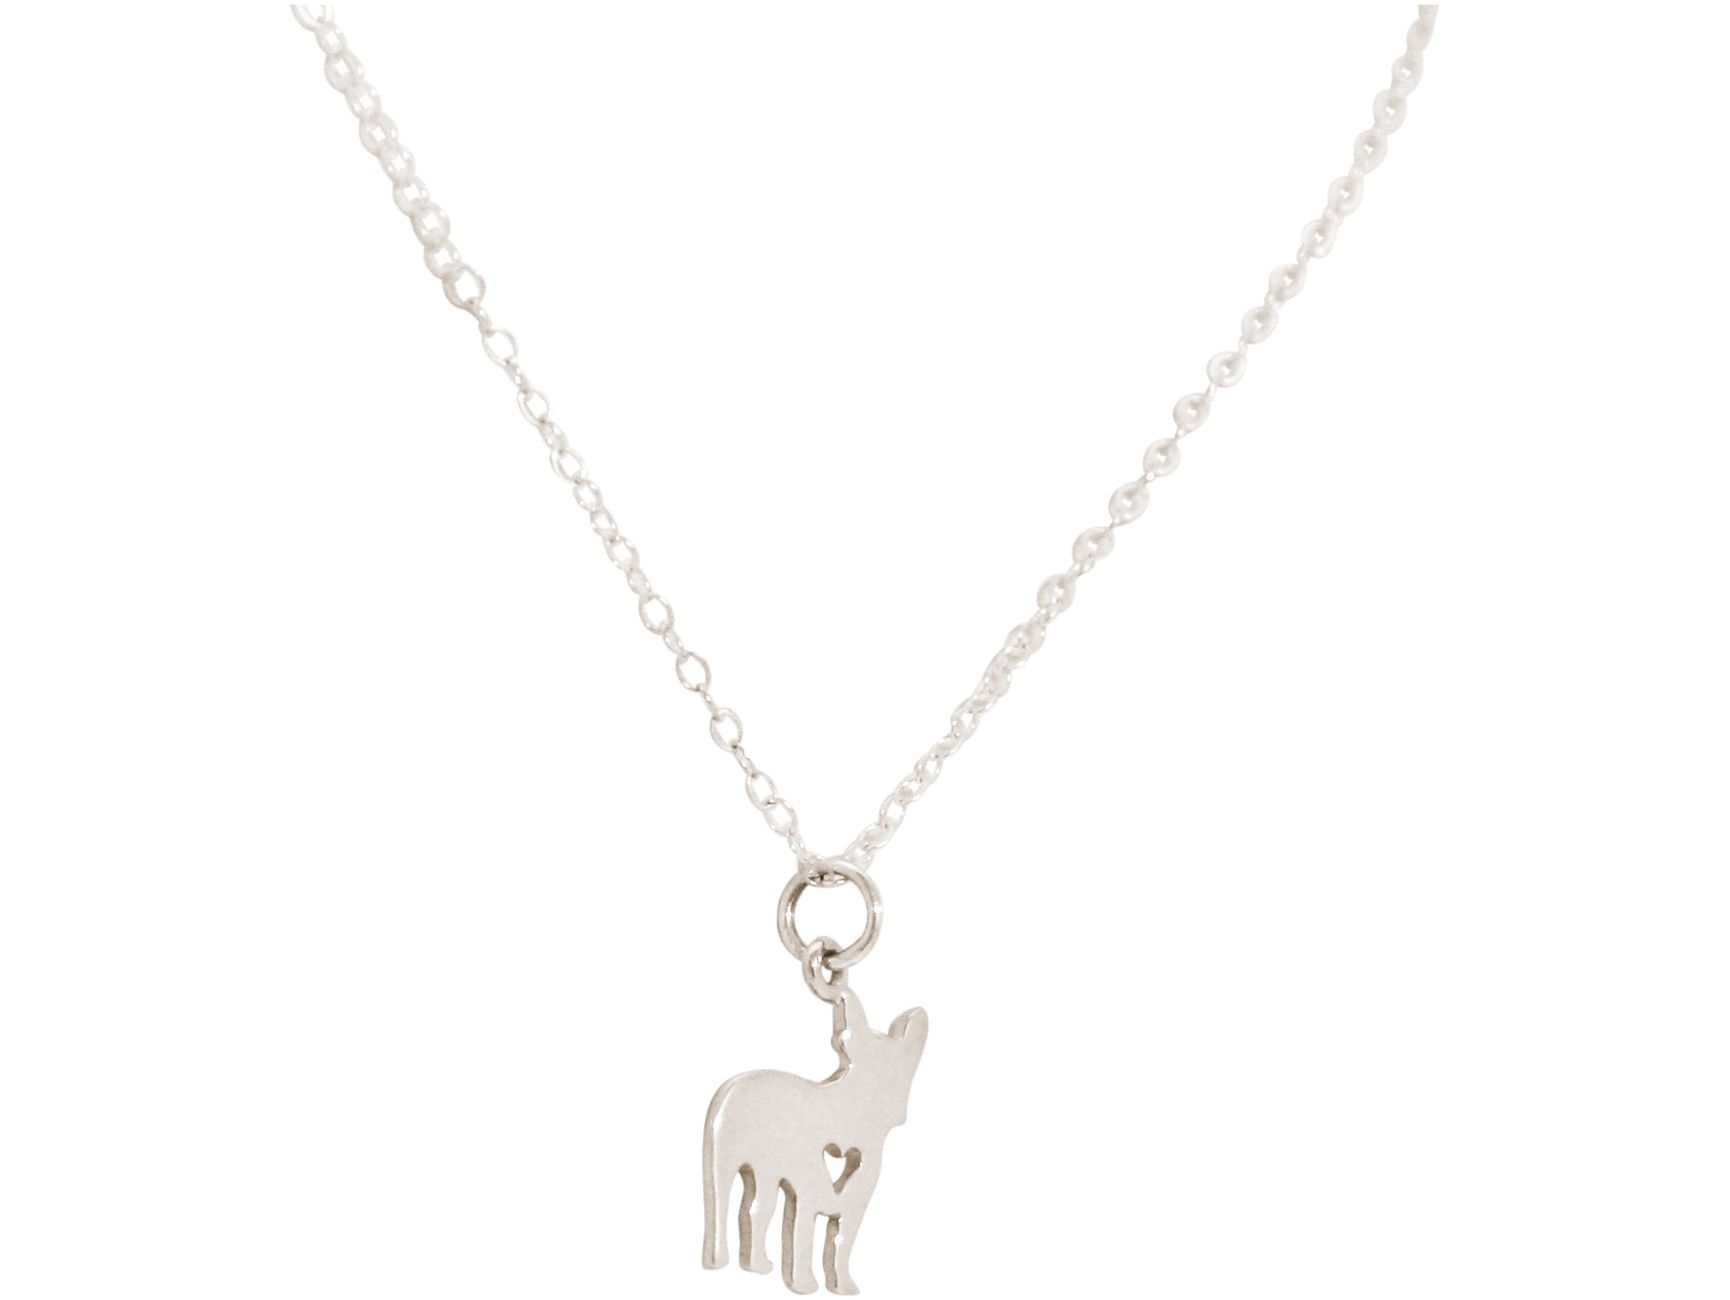 Gemshine Halskette Französische Bulldogge Mops Hund Anhänger aus 925  Silber, vergoldet oder rose an 45 cm Kette. Für Haustier Herrchen, Frauchen  – Made in Spain